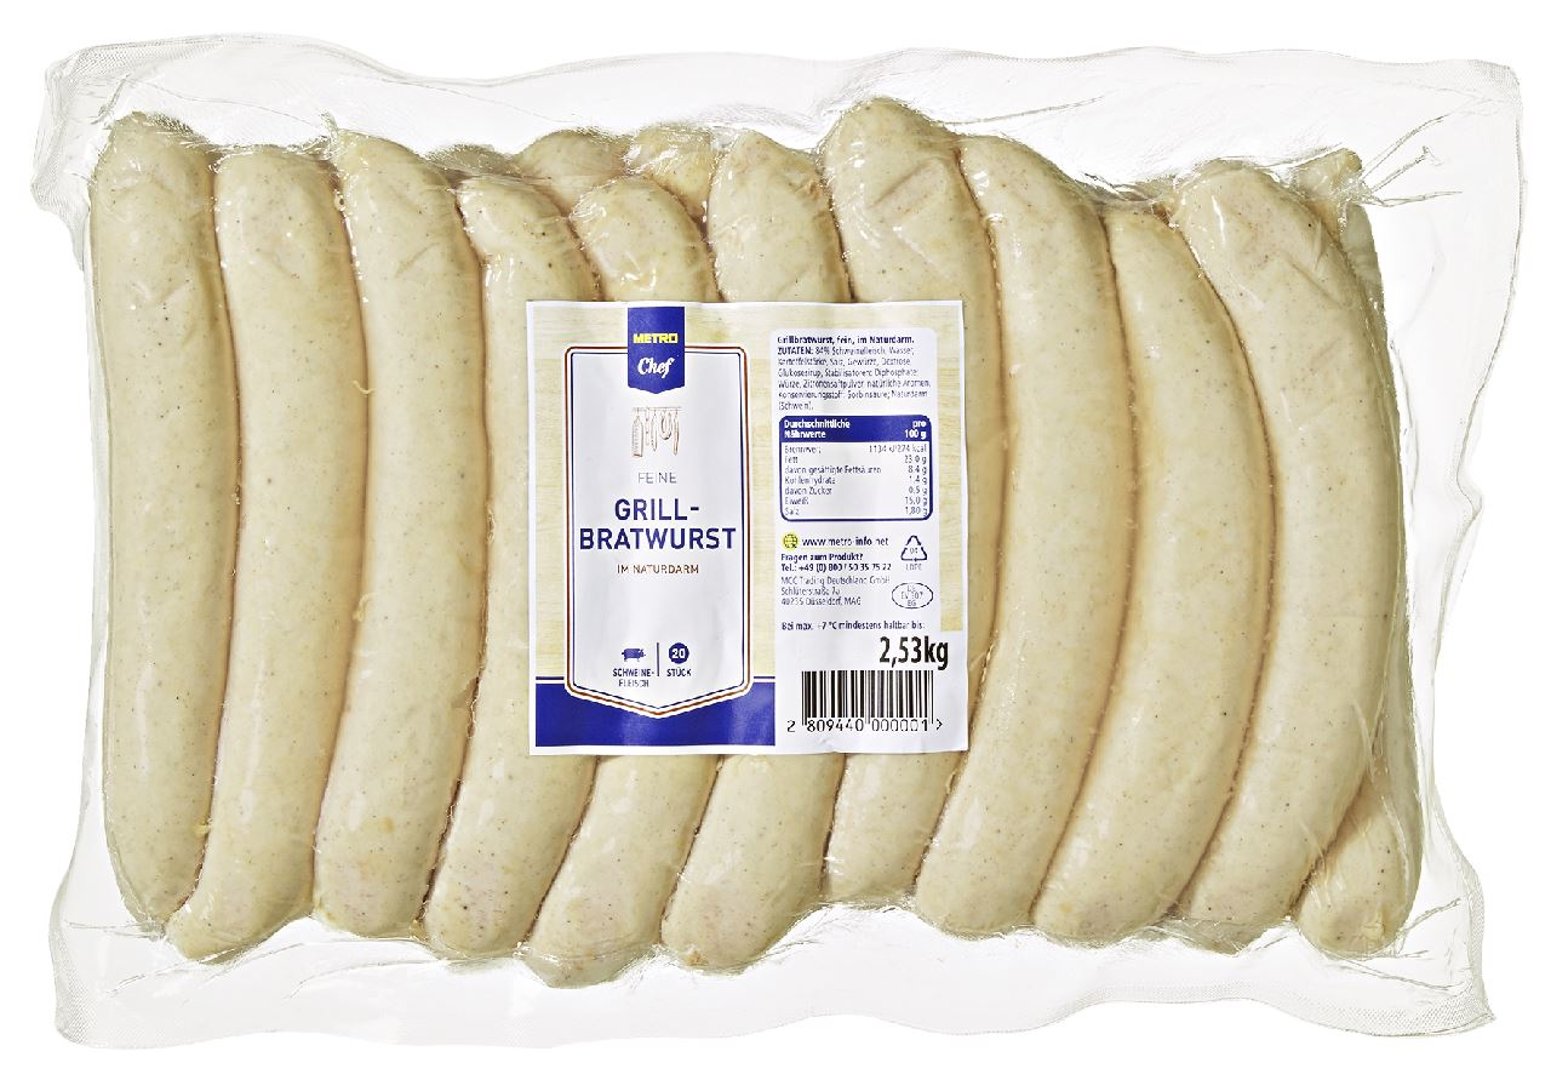 METRO Chef - Grill Bratwurst im Naturdarm, gekühlt - ca. 2,5 kg Packung